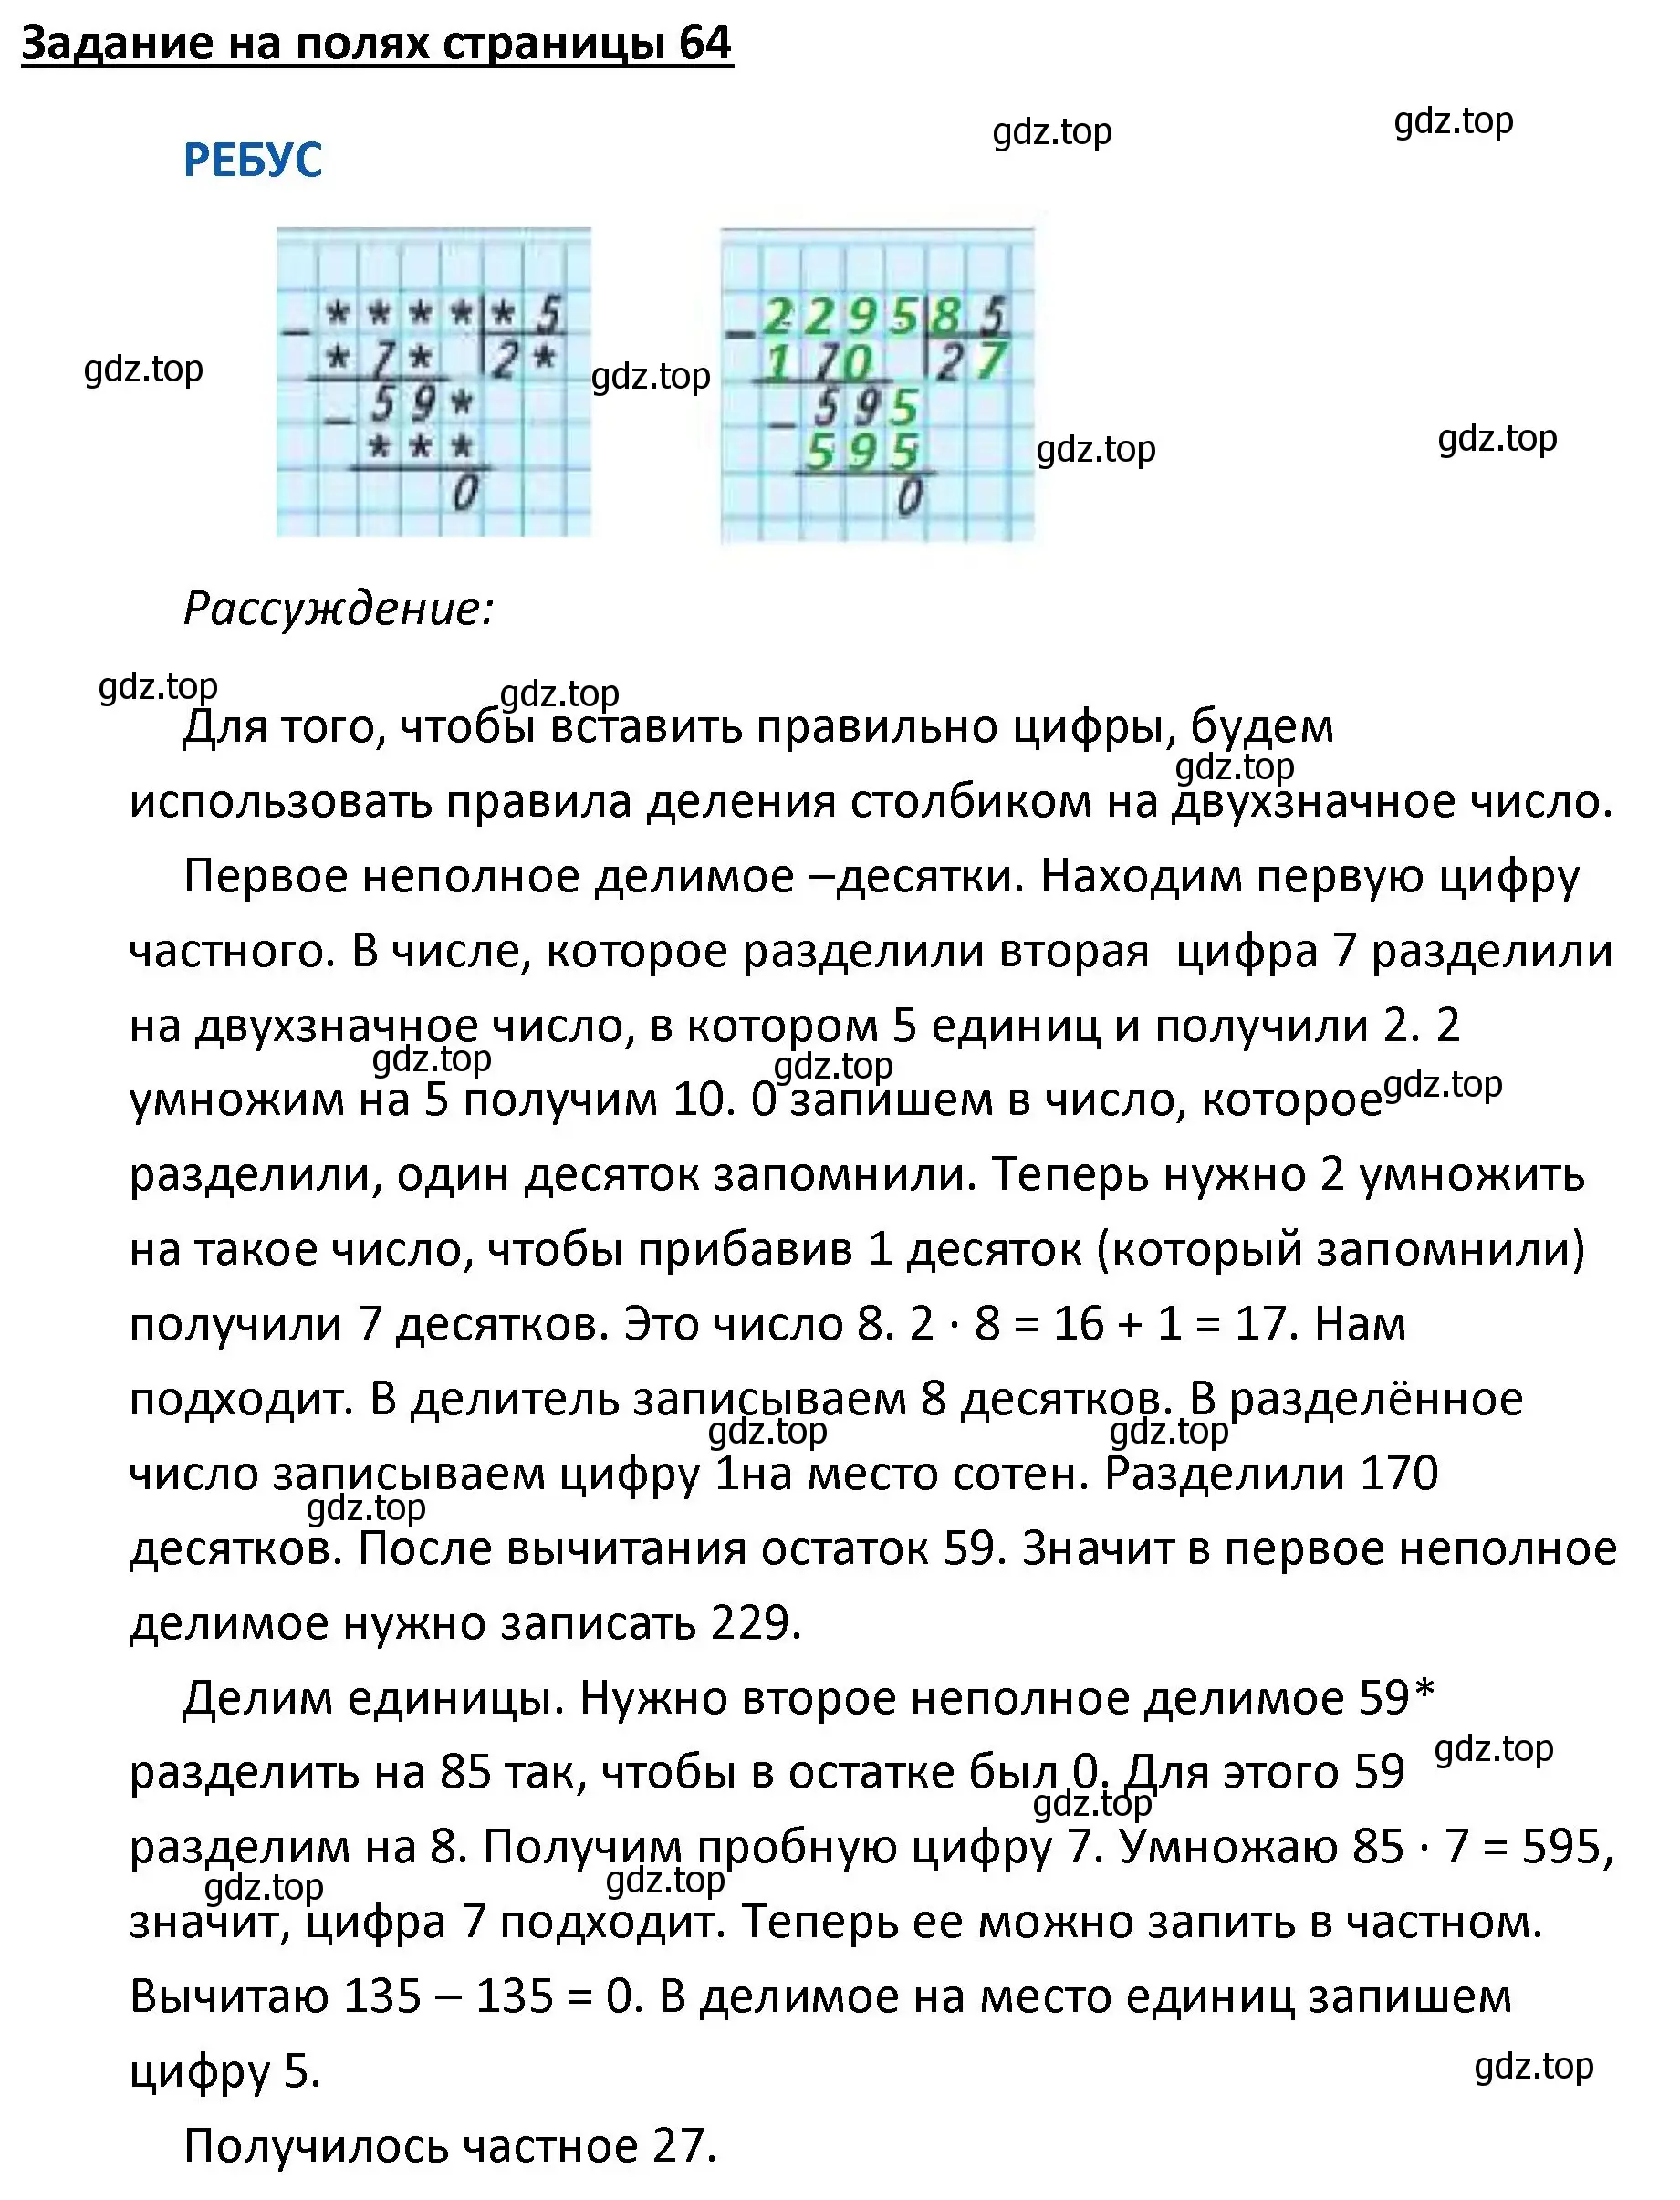 Решение  Ребус на полях (страница 64) гдз по математике 4 класс Моро, Бантова, учебник 2 часть